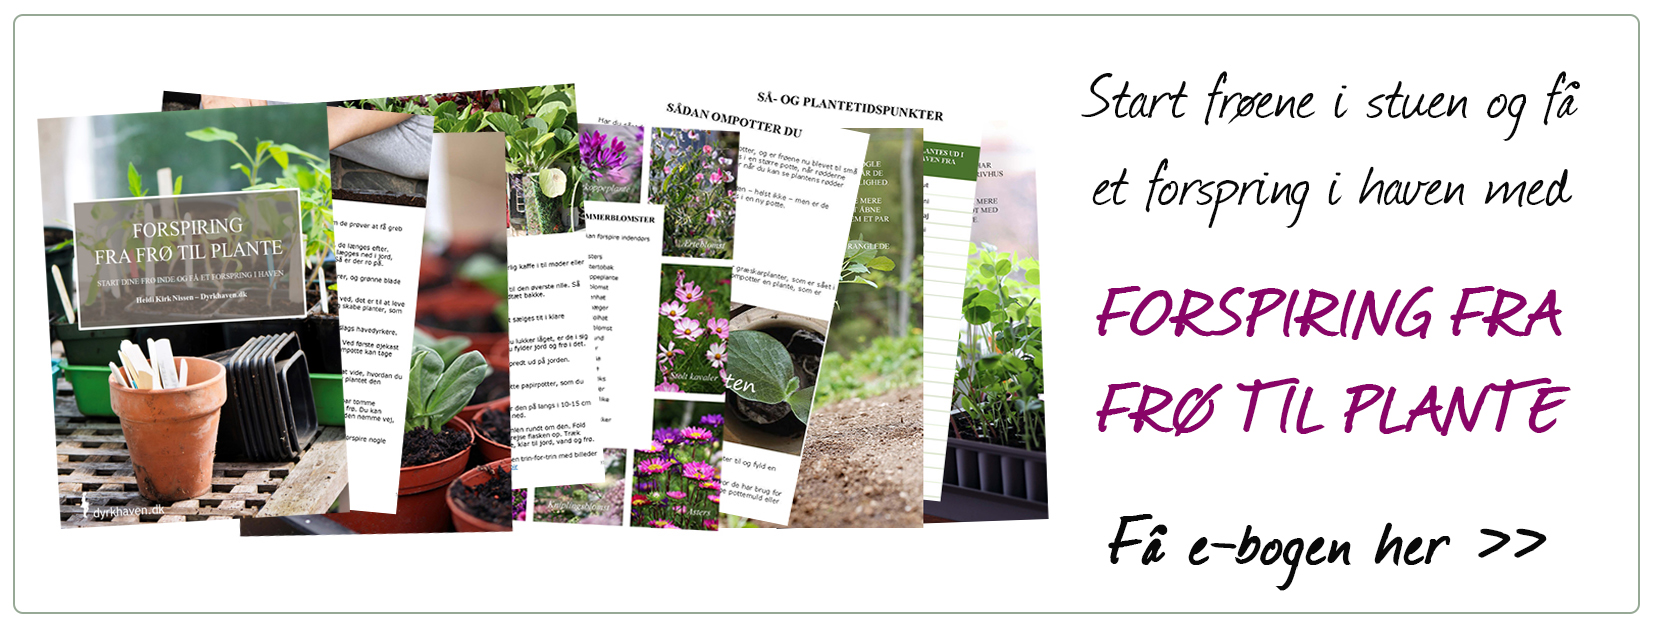 Start frøene indenfor i stuen - forspir dem - og få et forspring i haven med e-bogen Forspiring fra frø til plante